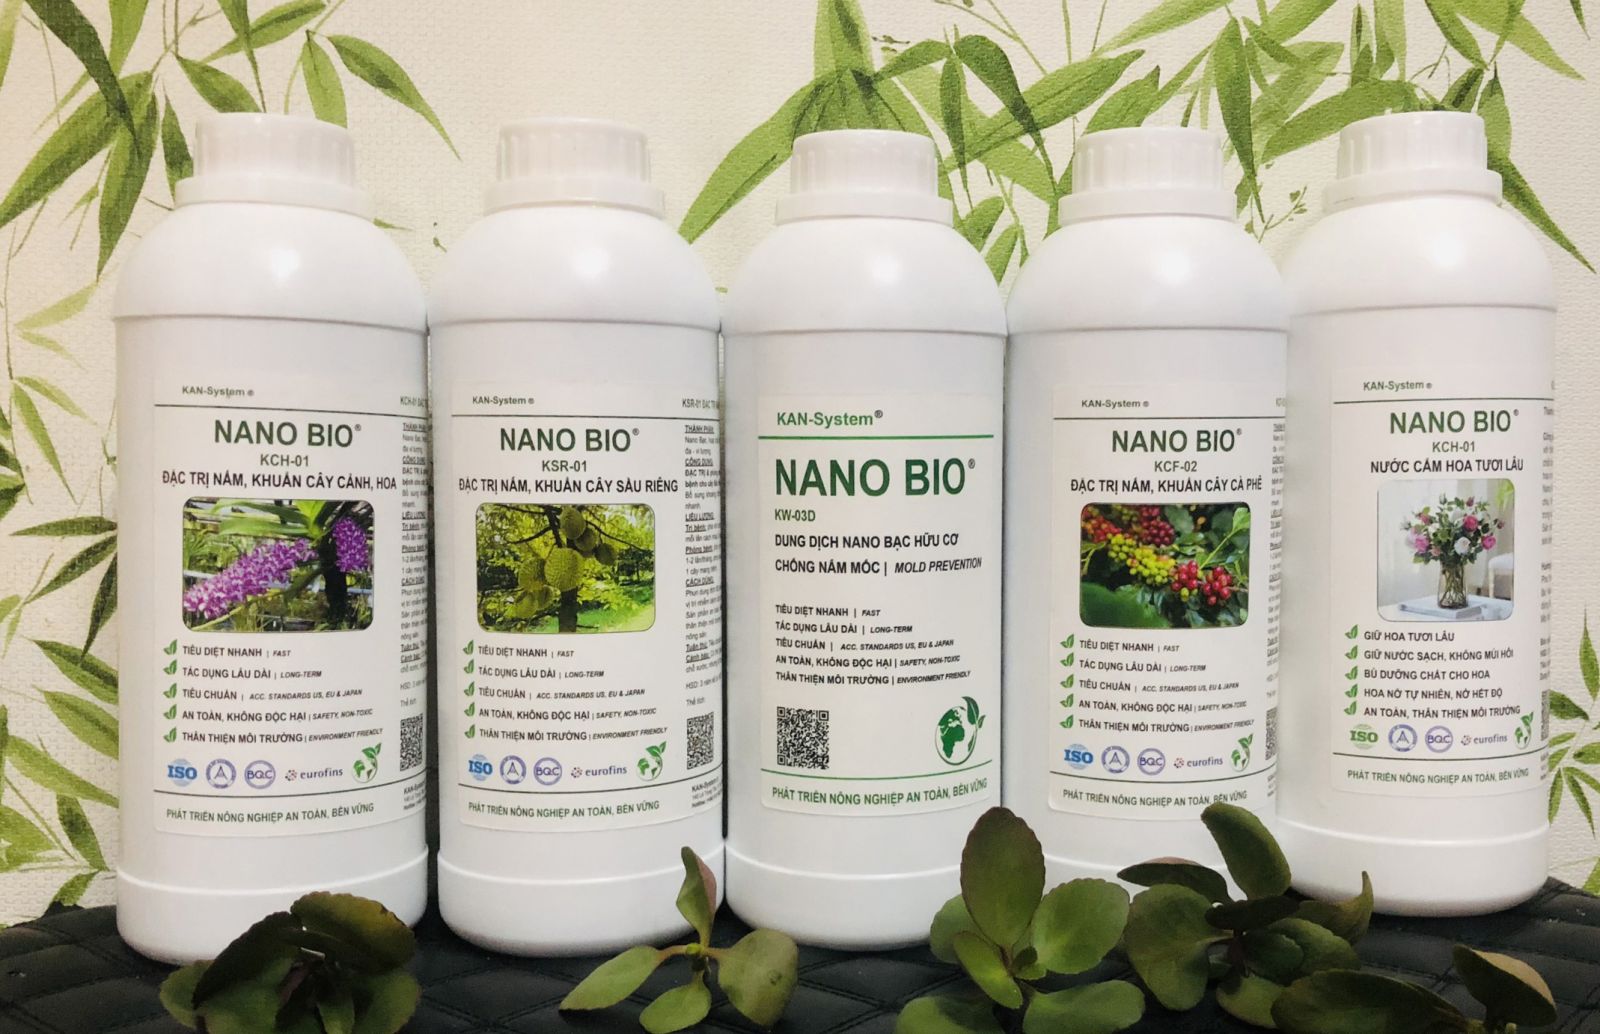 NANO BIO: ĐẶC TRỊ & phòng chống bệnh do nấm, vi khuẩn gây bệnh cho cây Thanh Long